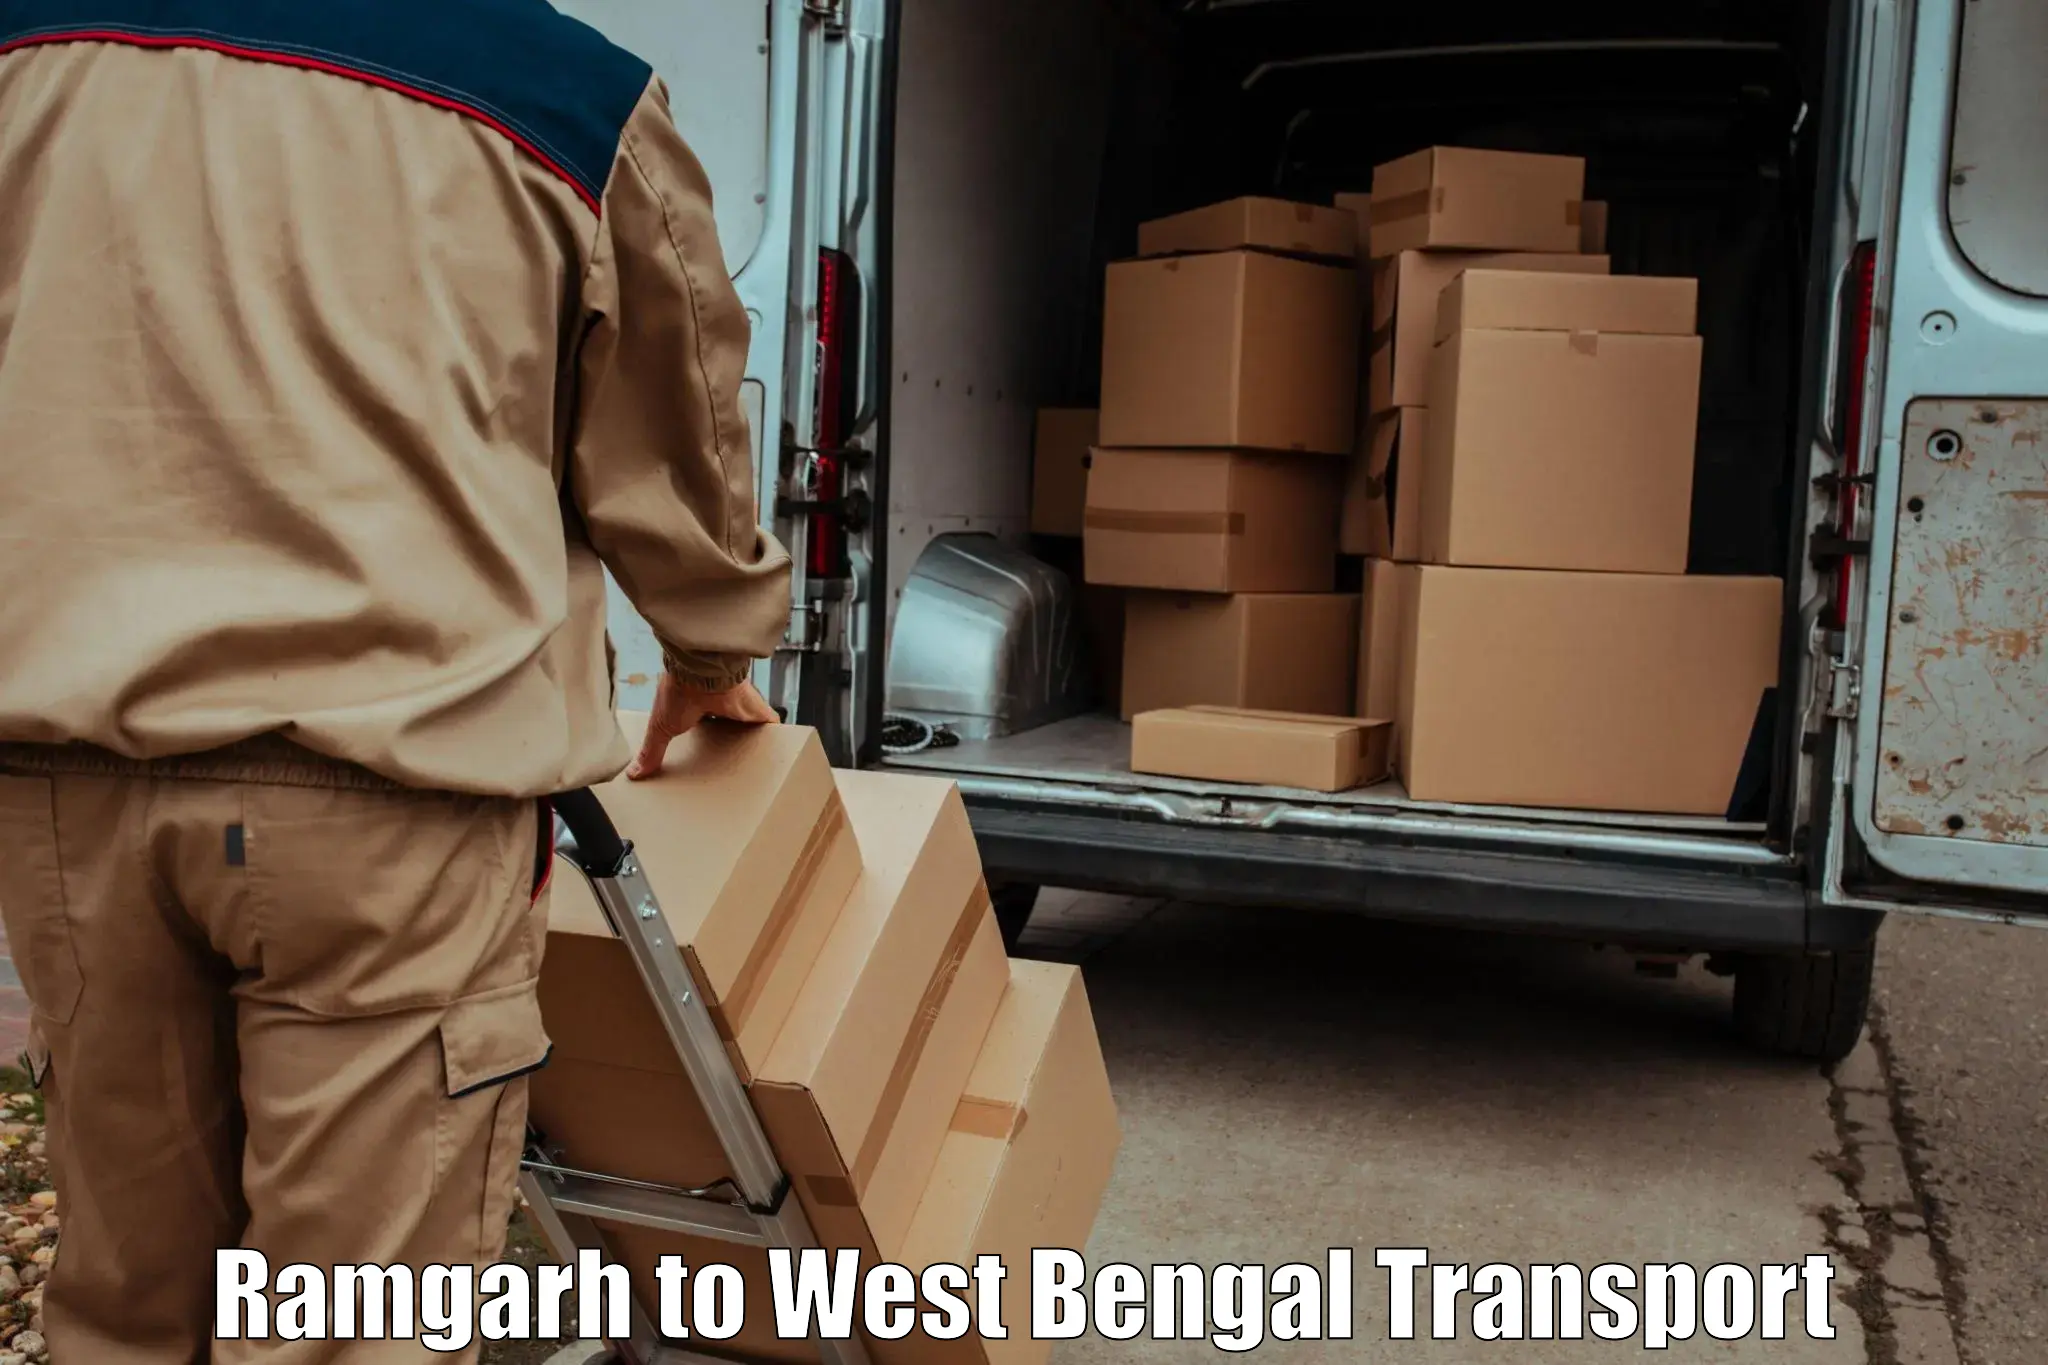 Land transport services Ramgarh to Bishnupur